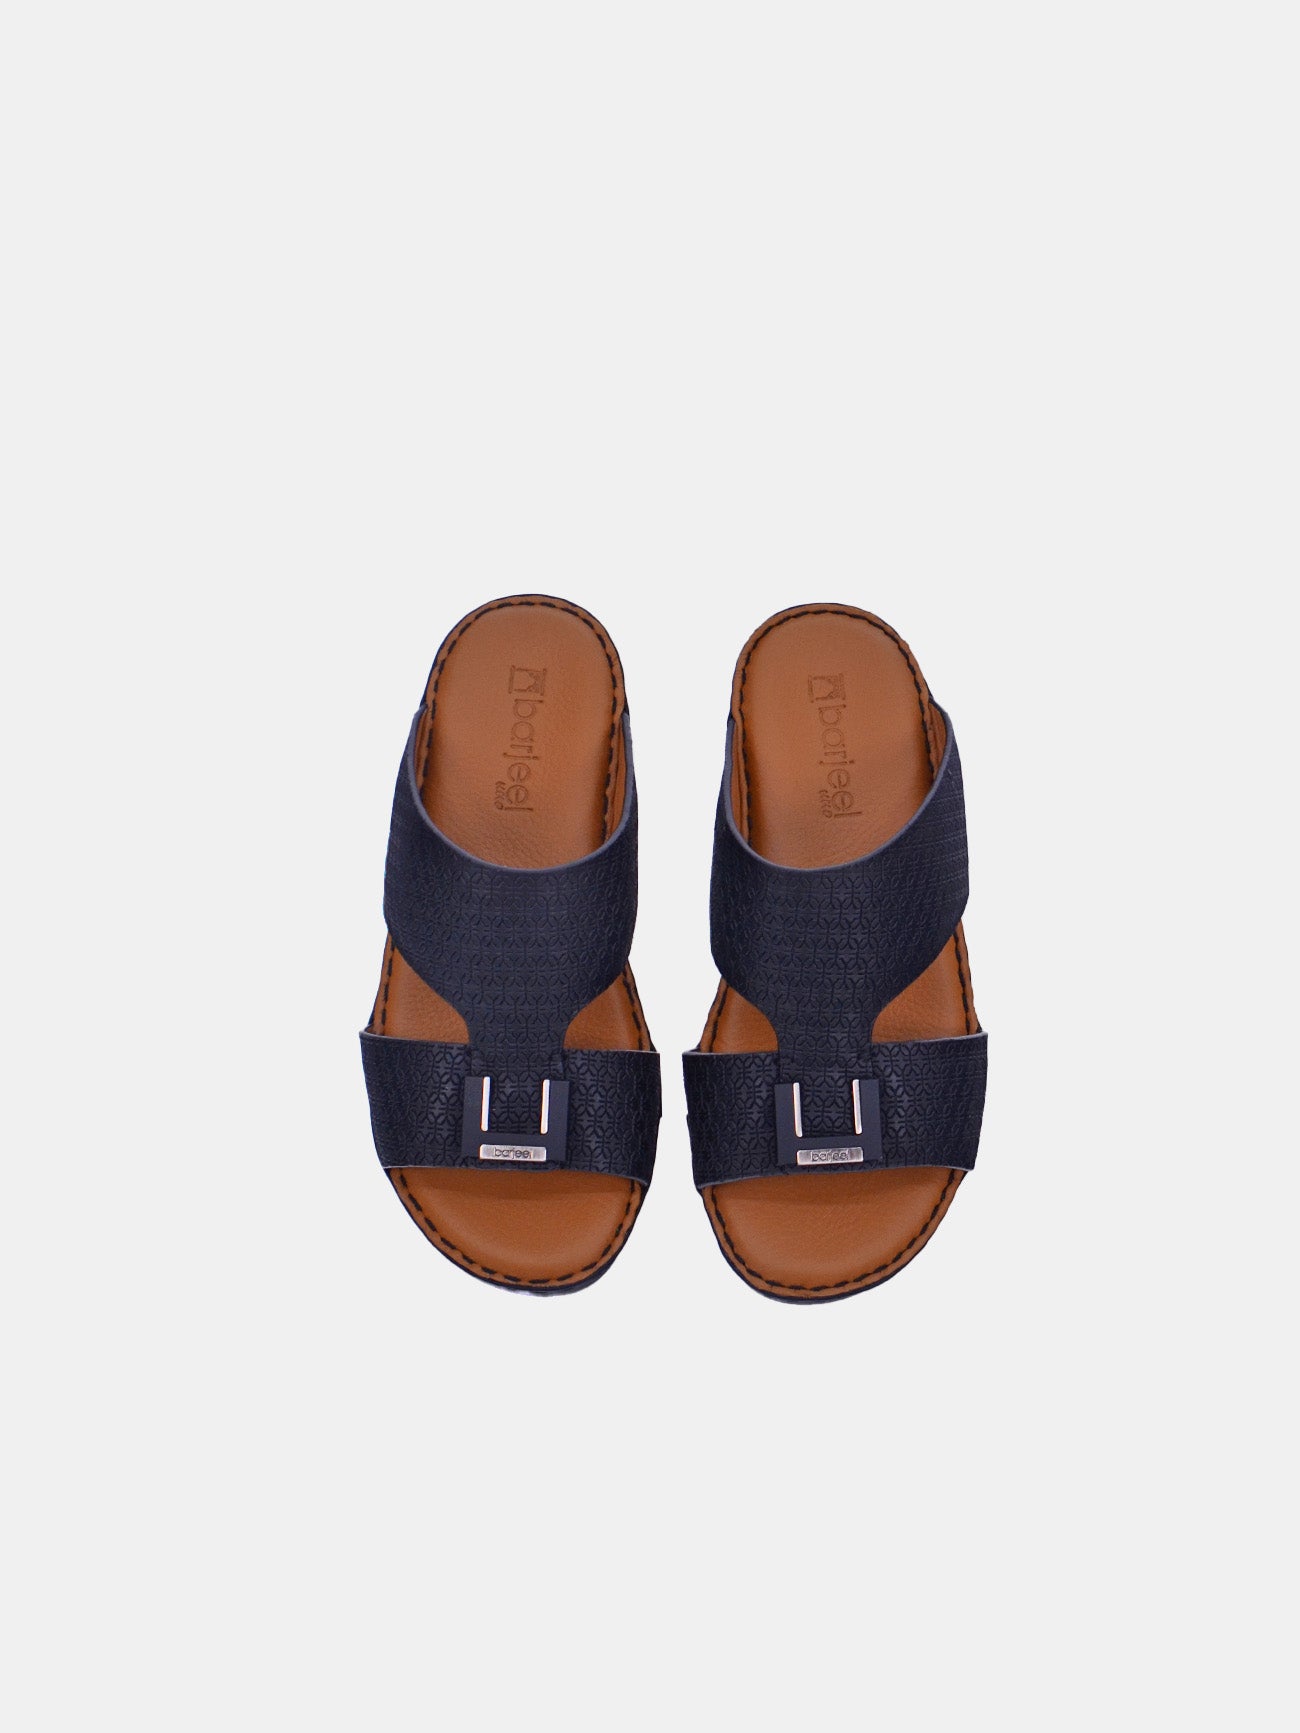 Barjeel Uno BSP1-01 Boys Arabic Sandals #color_Black